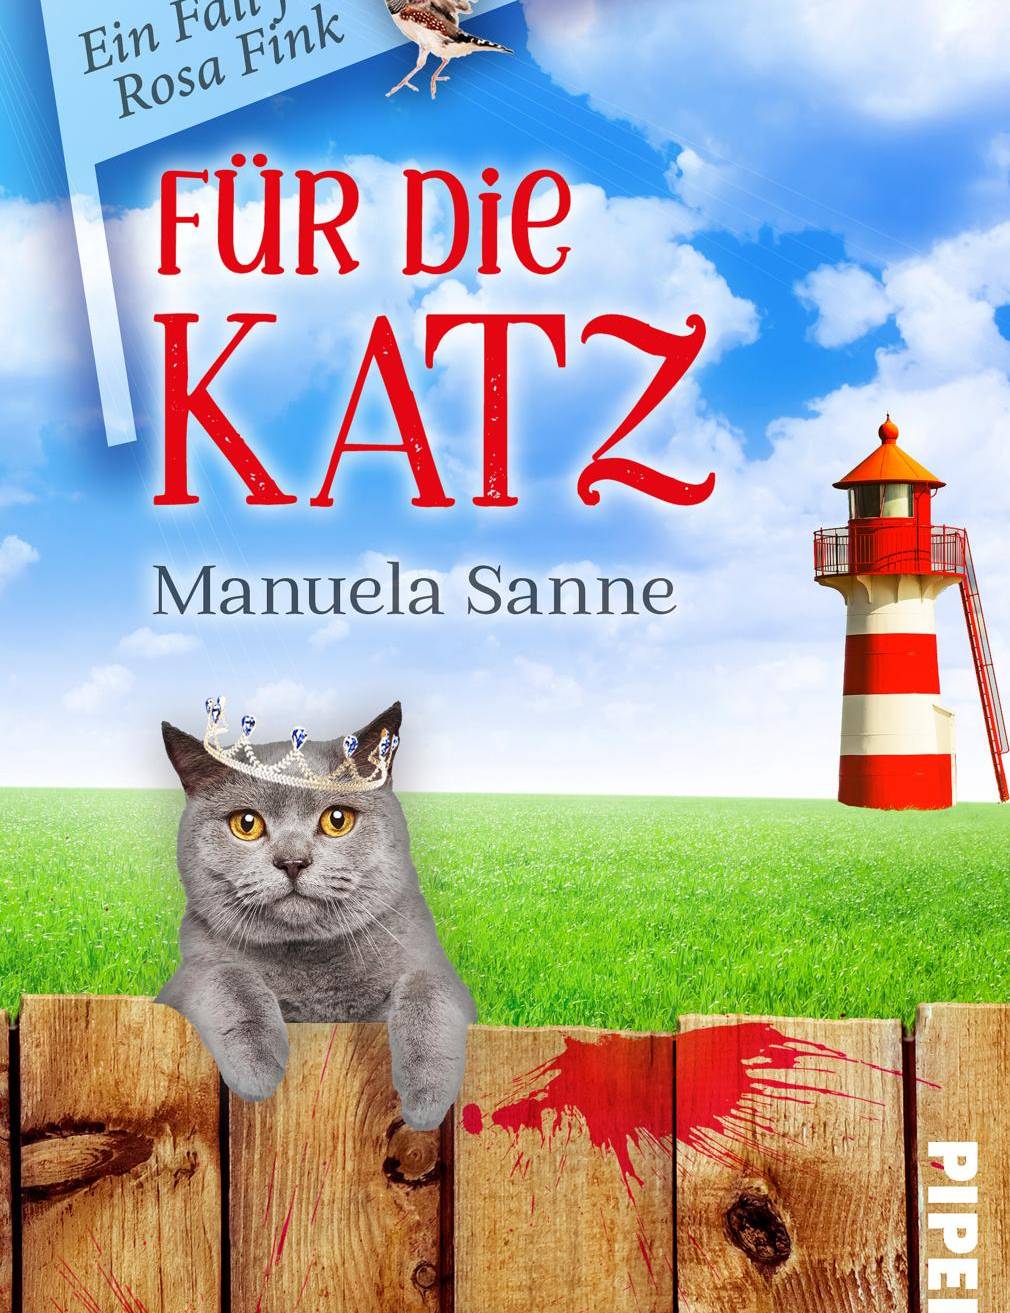  „Für die Katz“ von Manuela Sanne ist ein typischer Fall für Rosa Fink. 